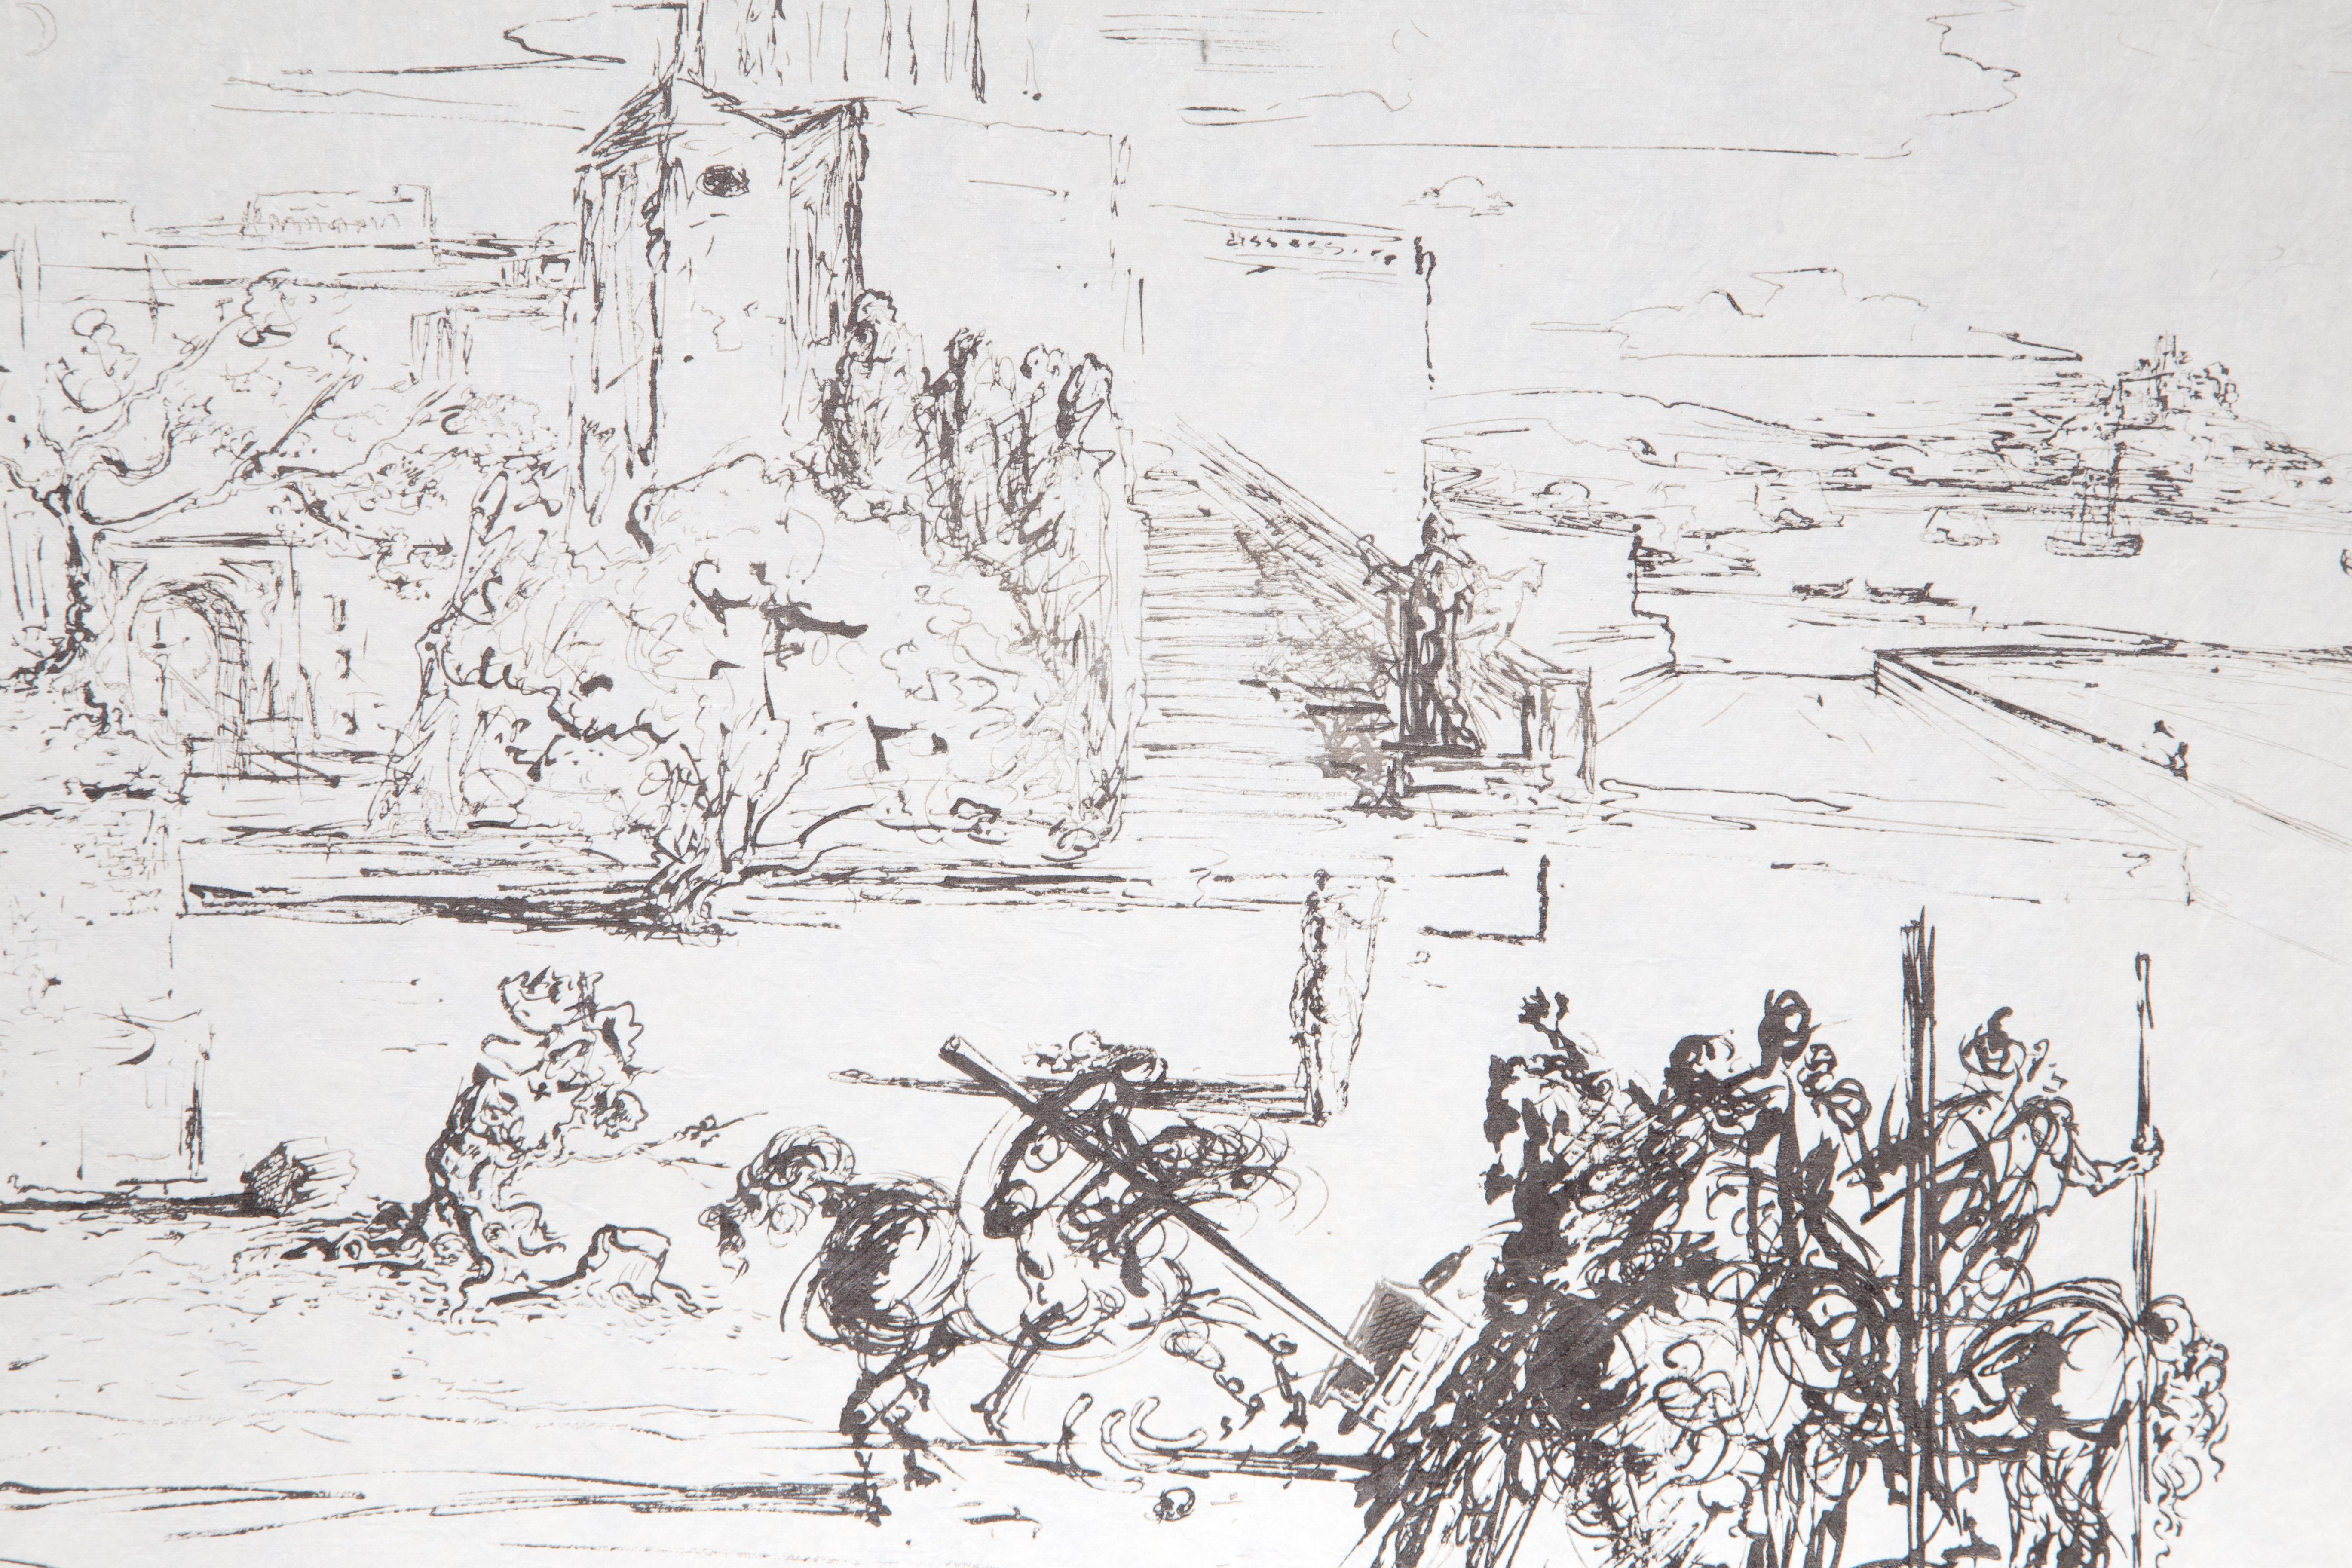 Road To Ampurdam (Rome et Cadaques), lettres et gravure de Salvador Dali - Print de Salvador Dalí